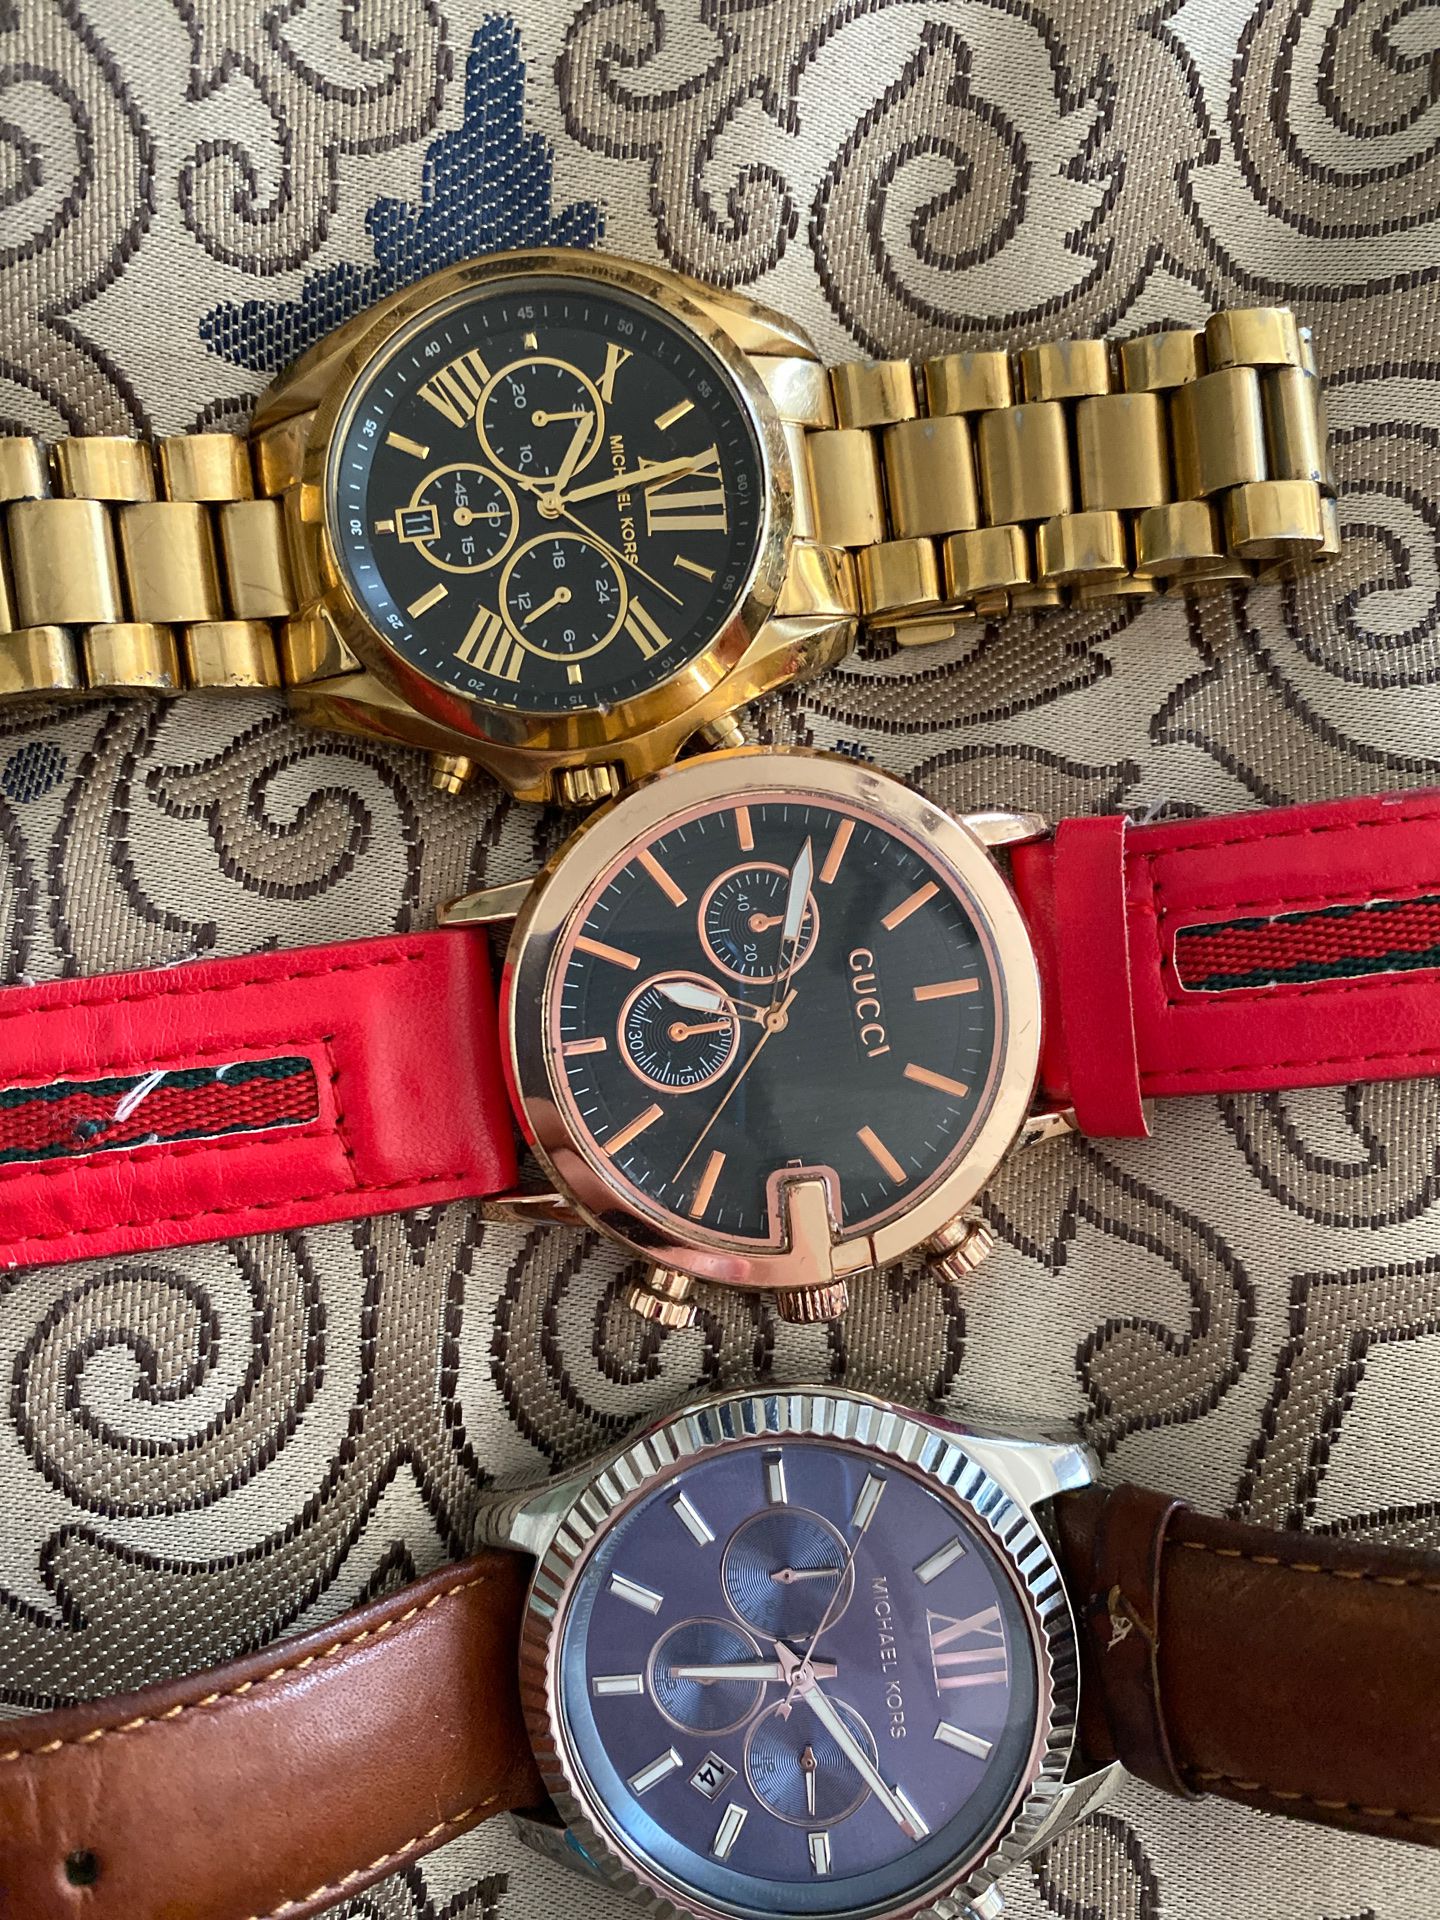 2 MK watches 1 Gucci watch